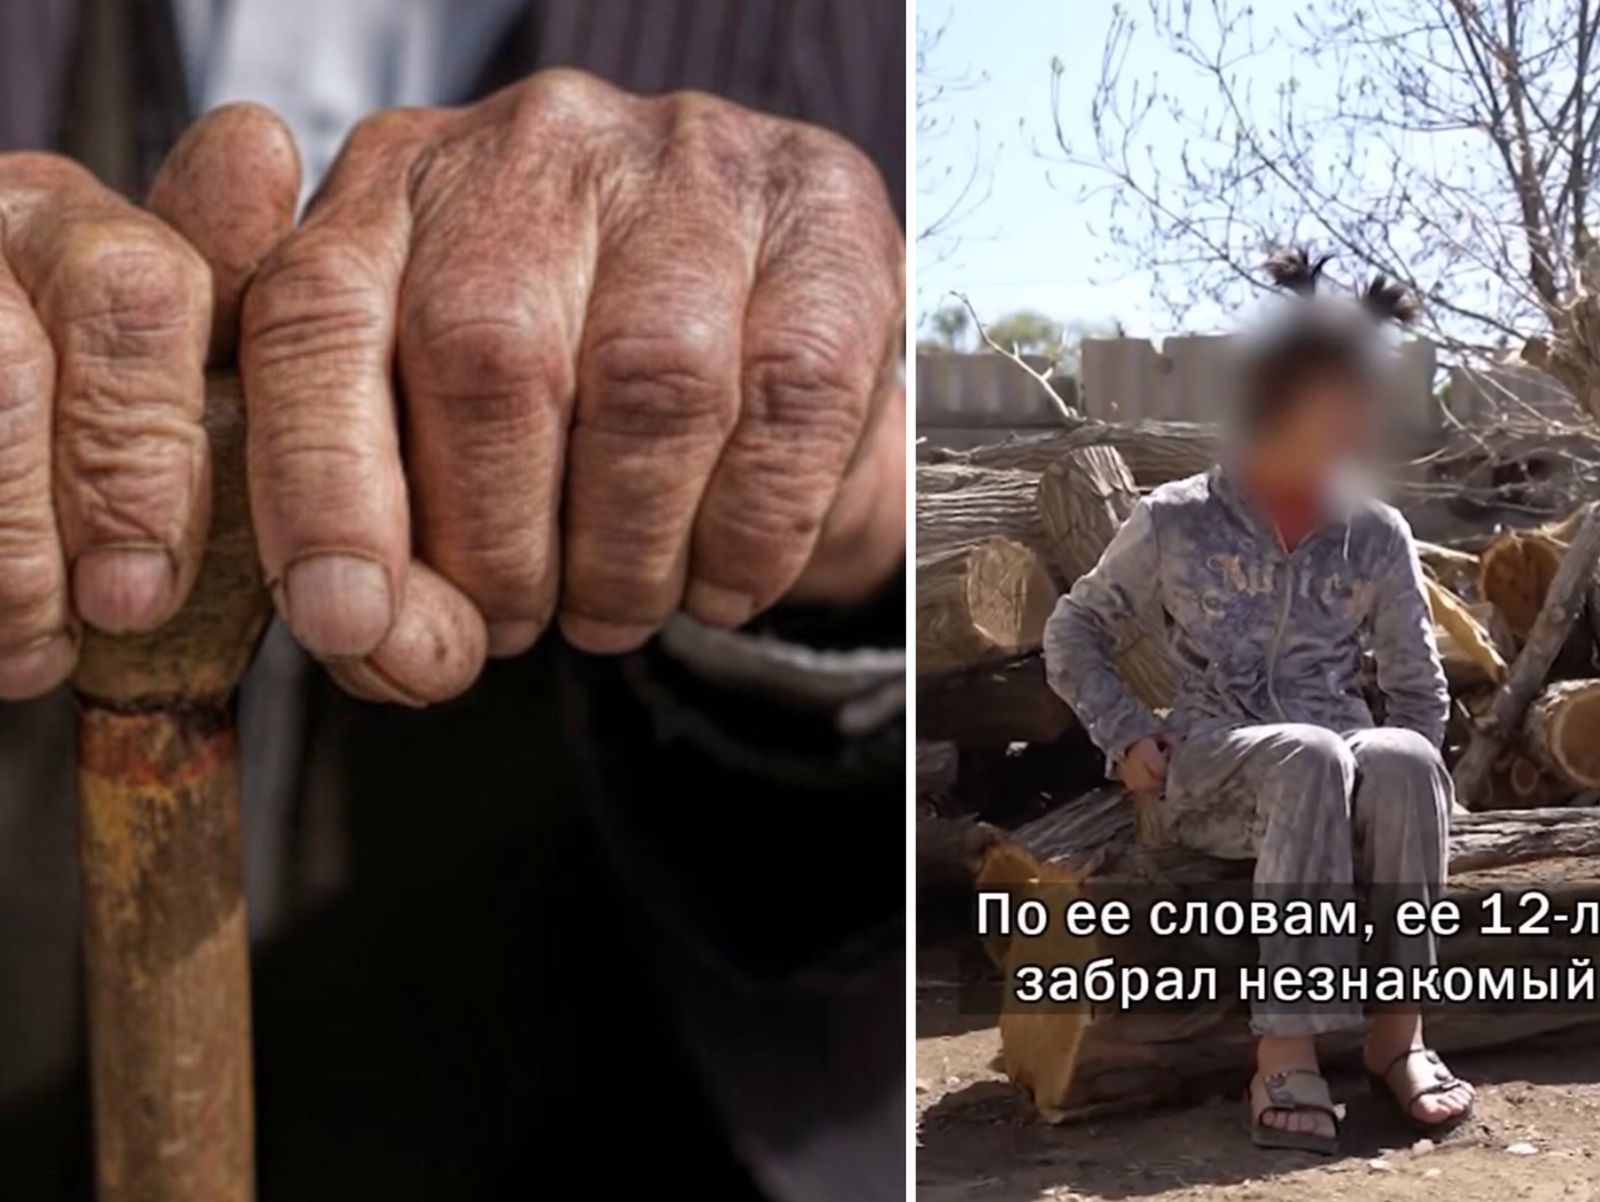 "Үстіне шығып, қызды зорлаған": 12 жастағы қызын 73 жастағы қария зорлағанын айтқан ана ақсақалдан пәтер талап етті